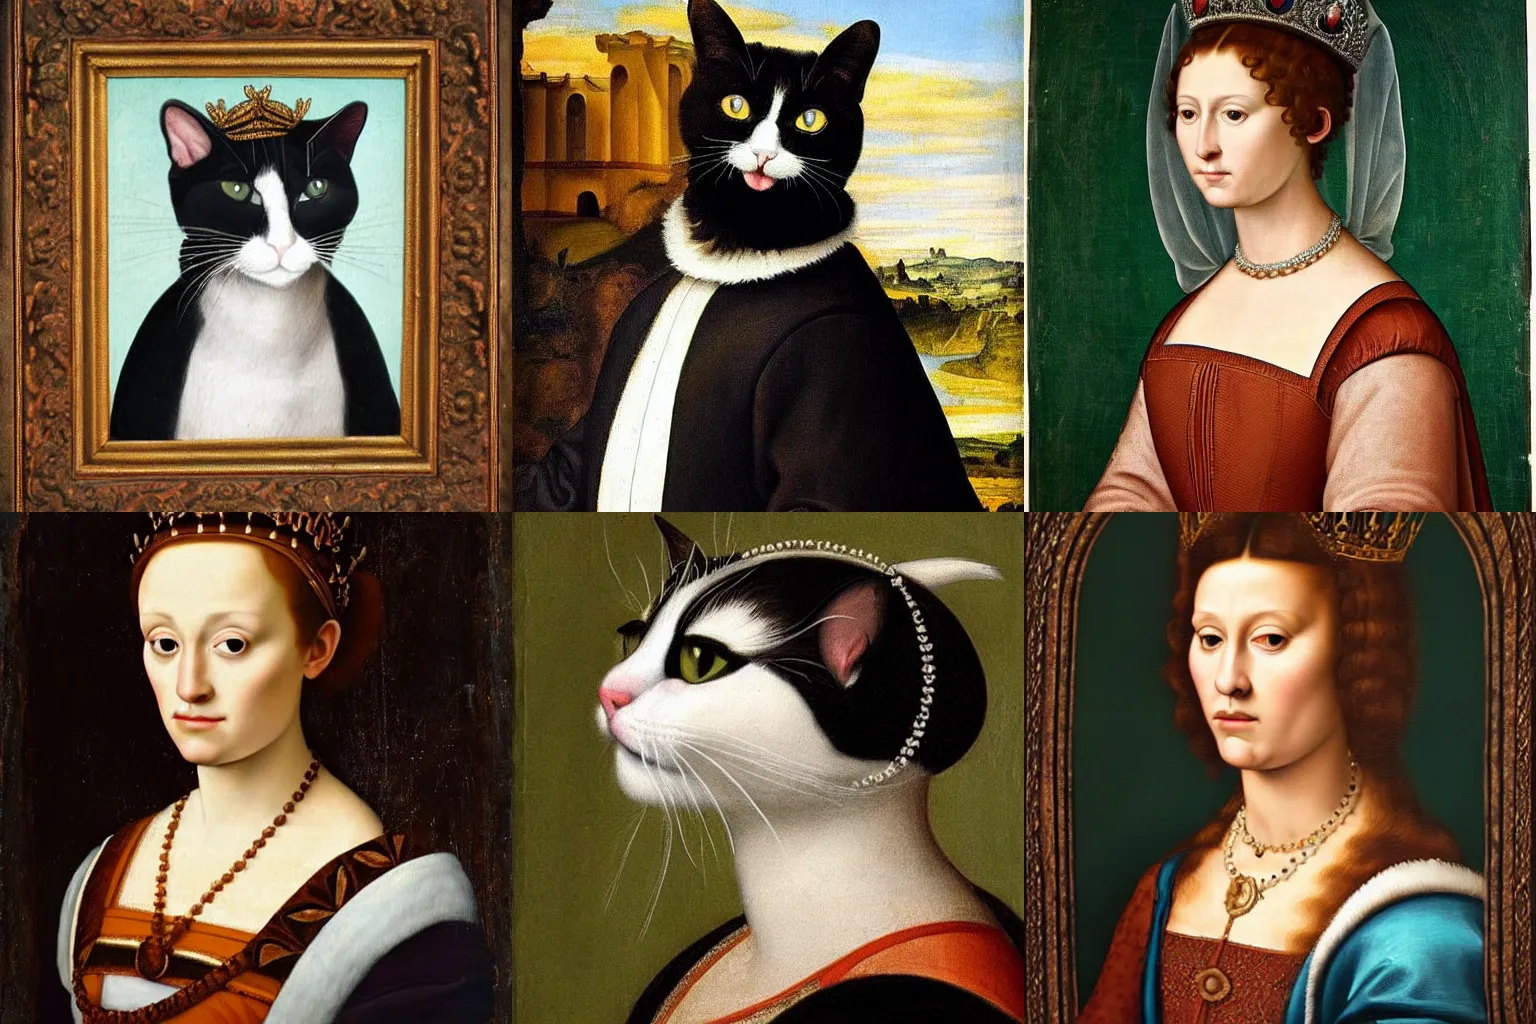 Prompt: beautiful renaissance portrait painting of a queen tuxedo cat